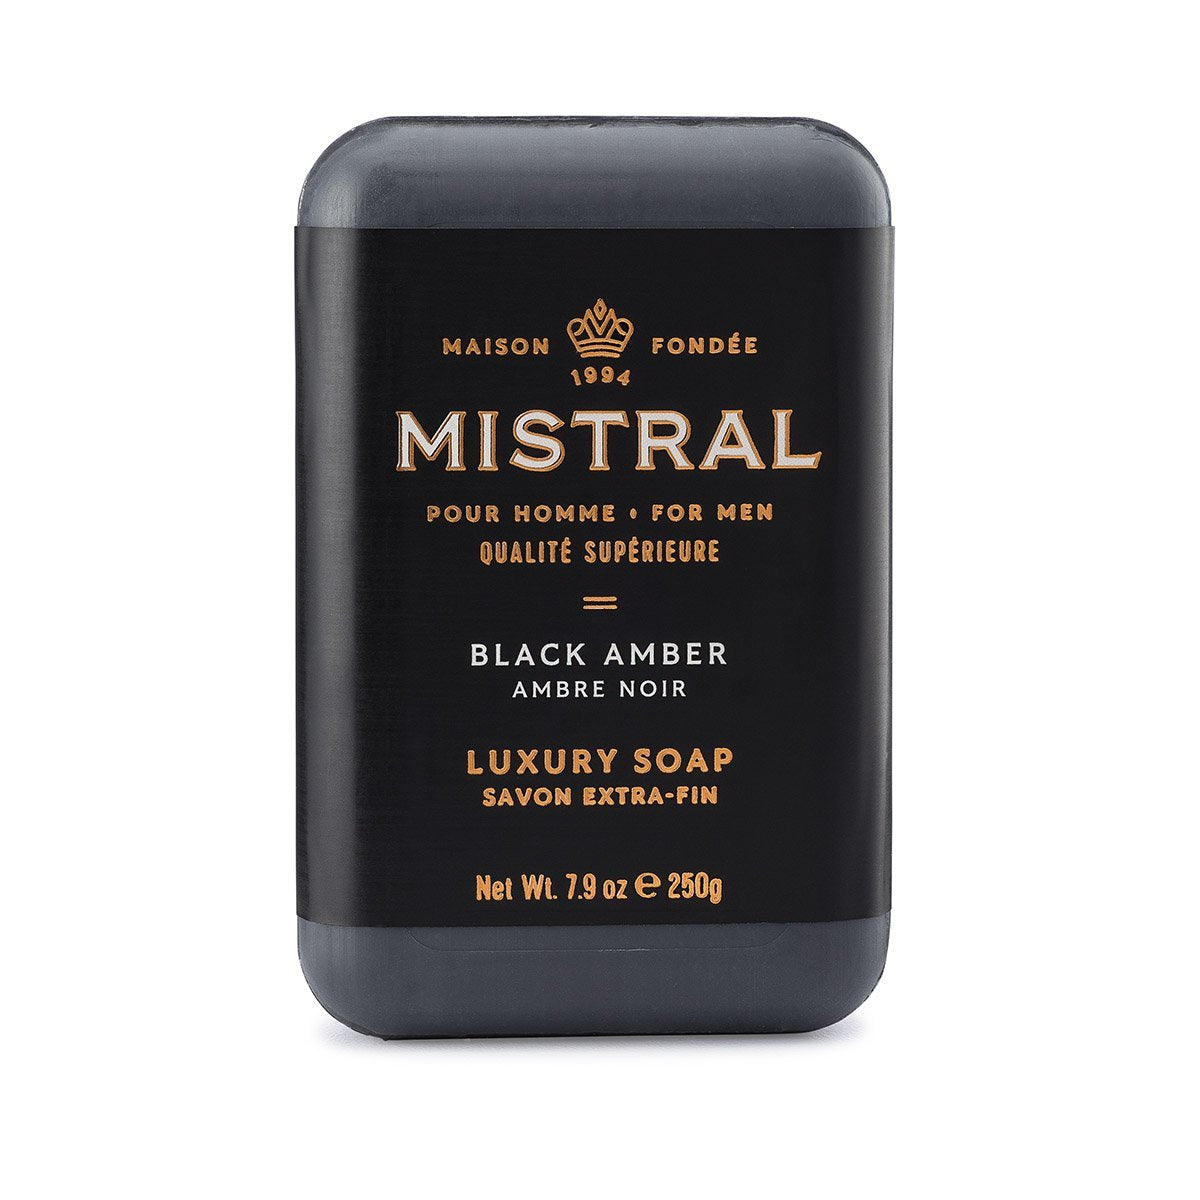 Mistral - Black Amber Bar Soap